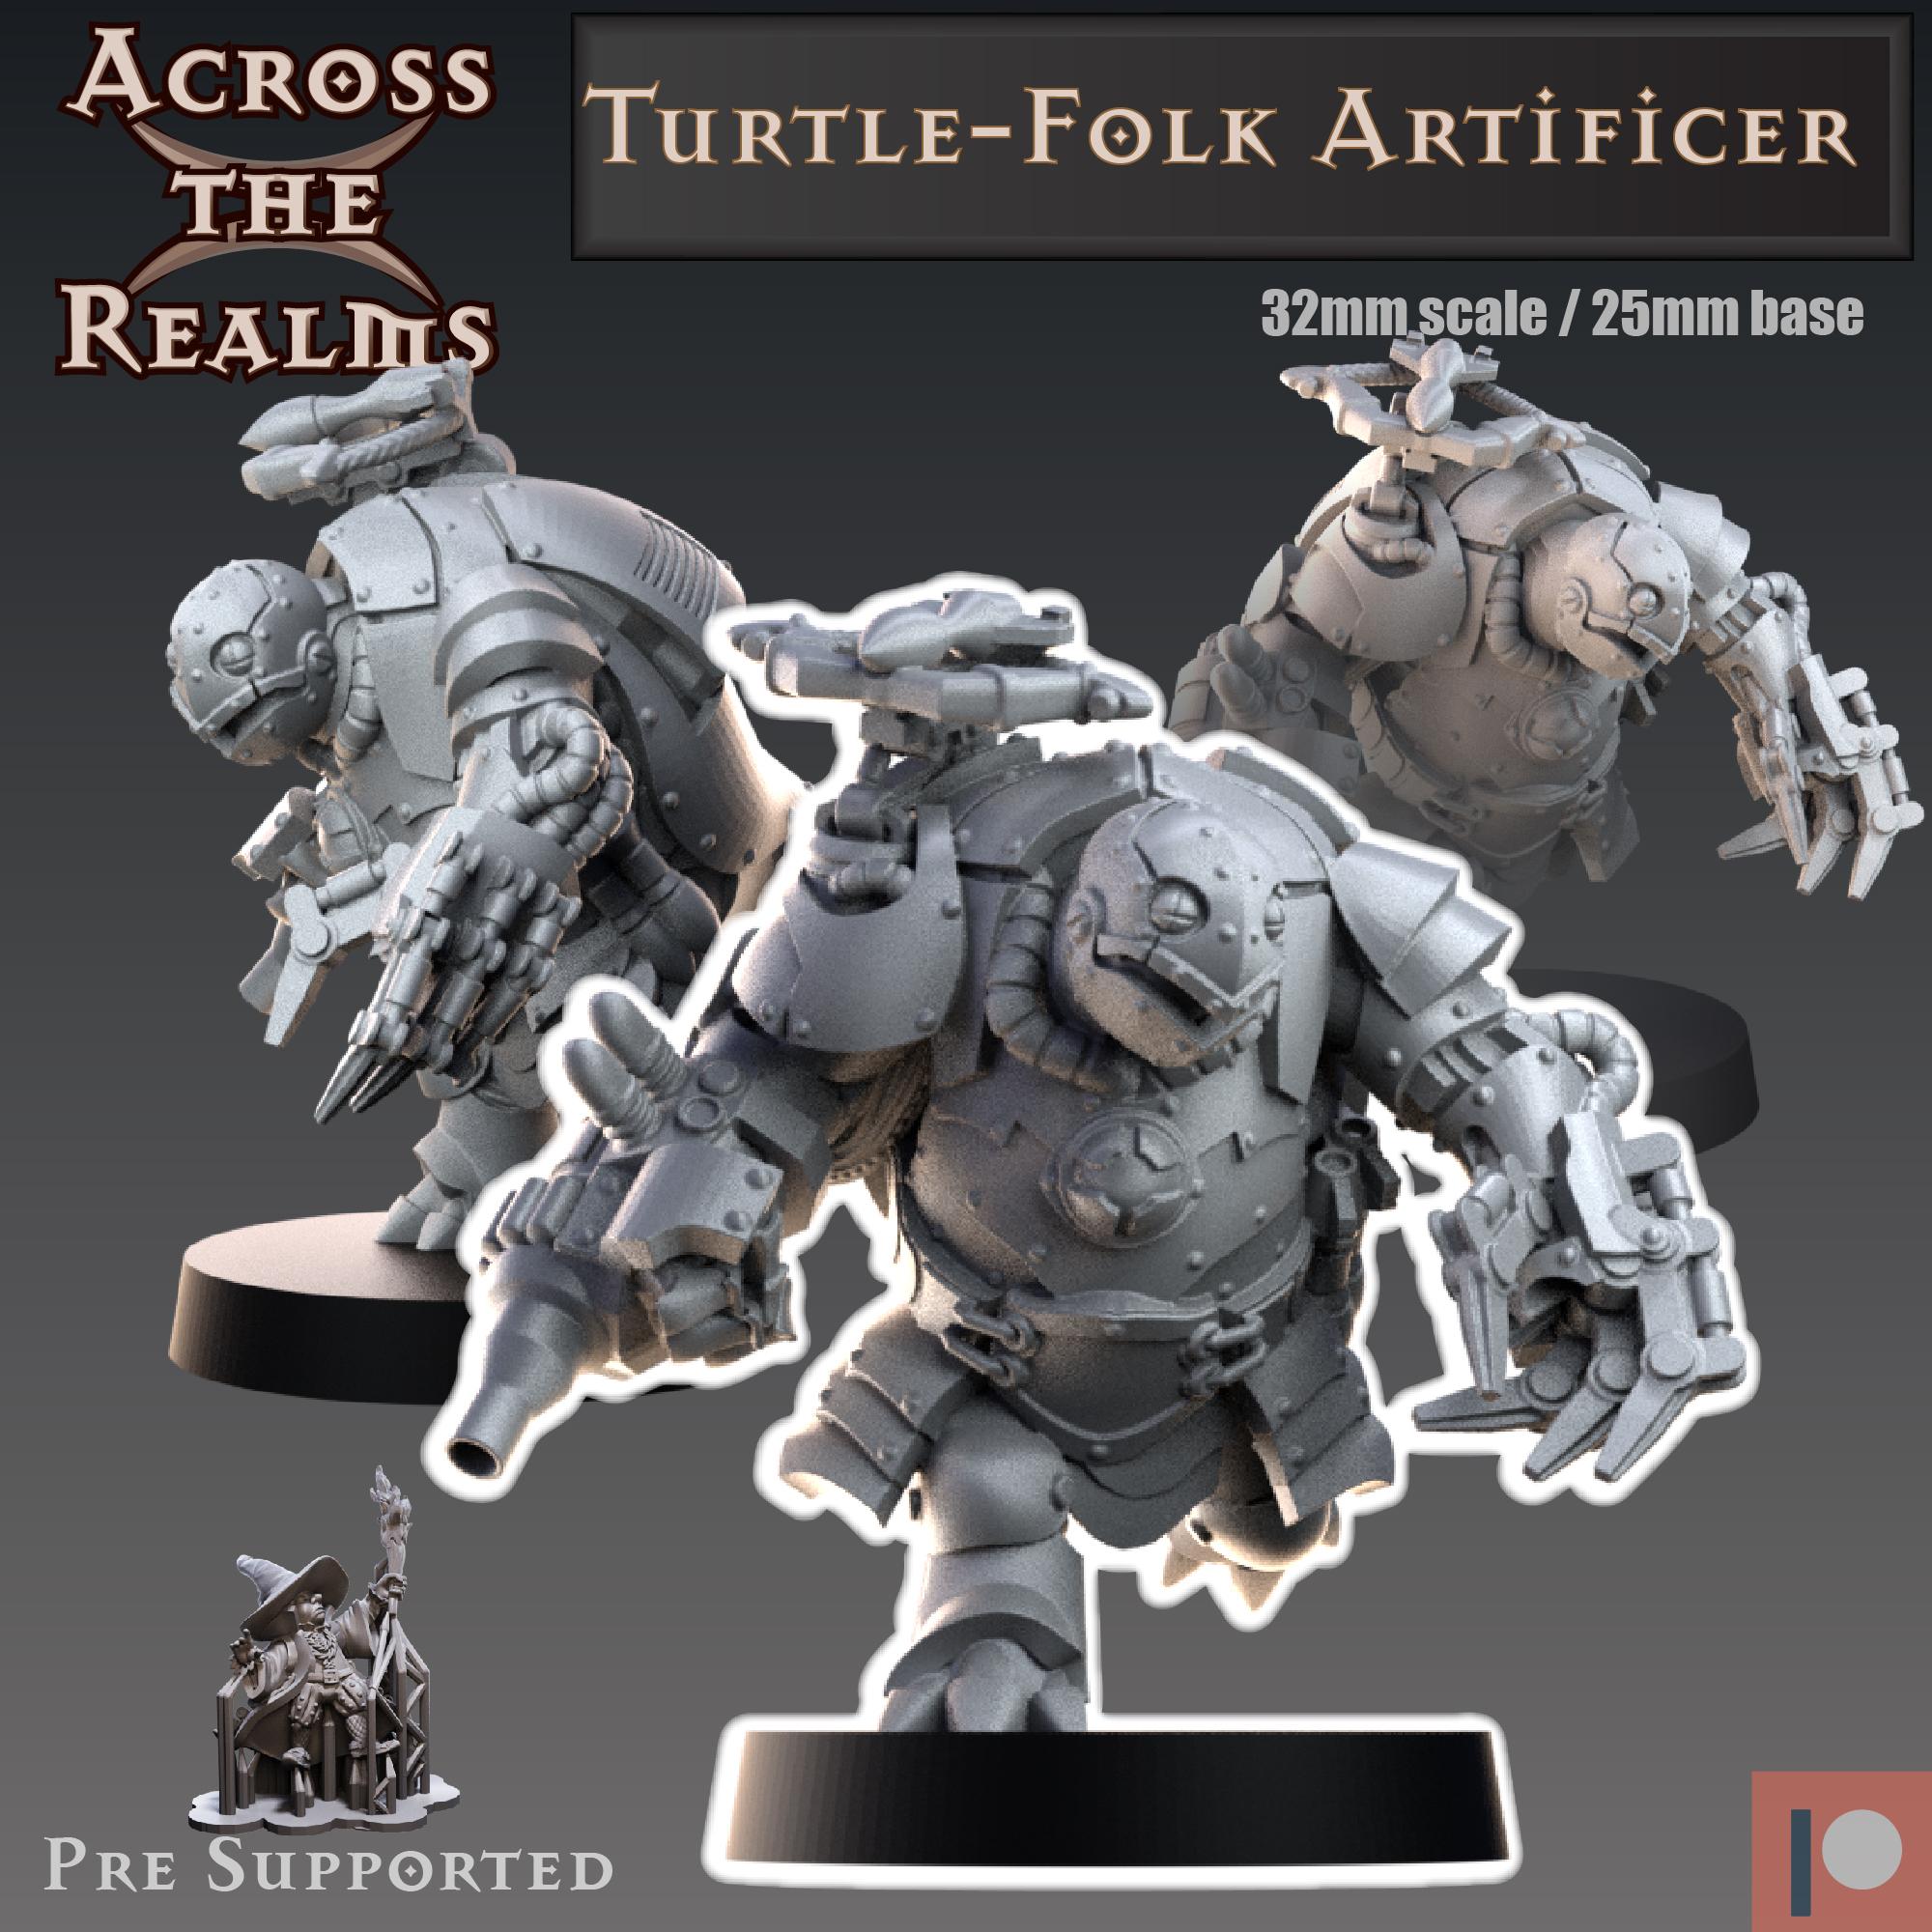 Turtle-folk Artificer 3d model